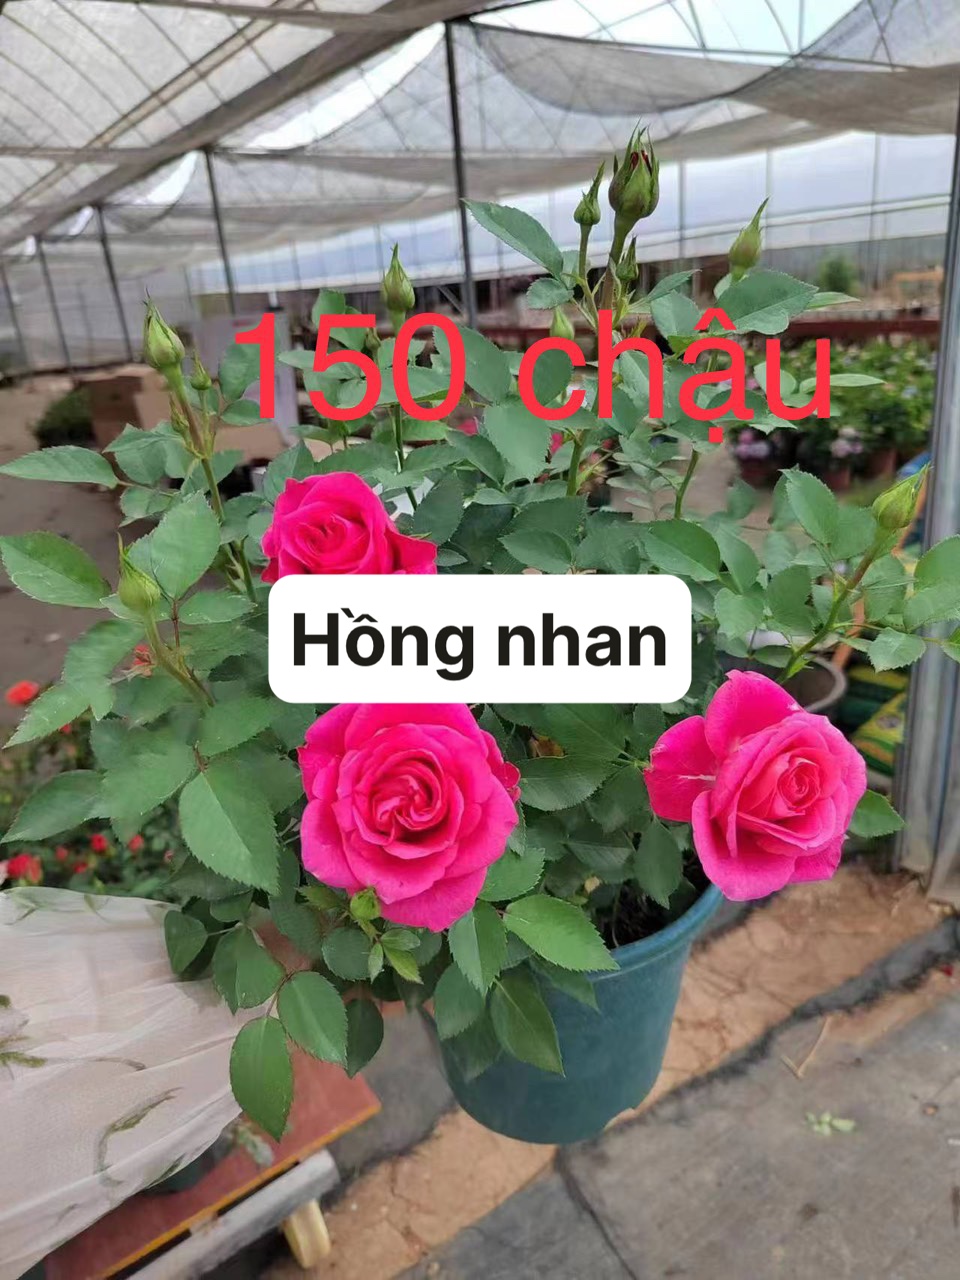 Hoa hồng nhập màu tím hồng xinh đẹp nở rộ tại Đà Nẵng